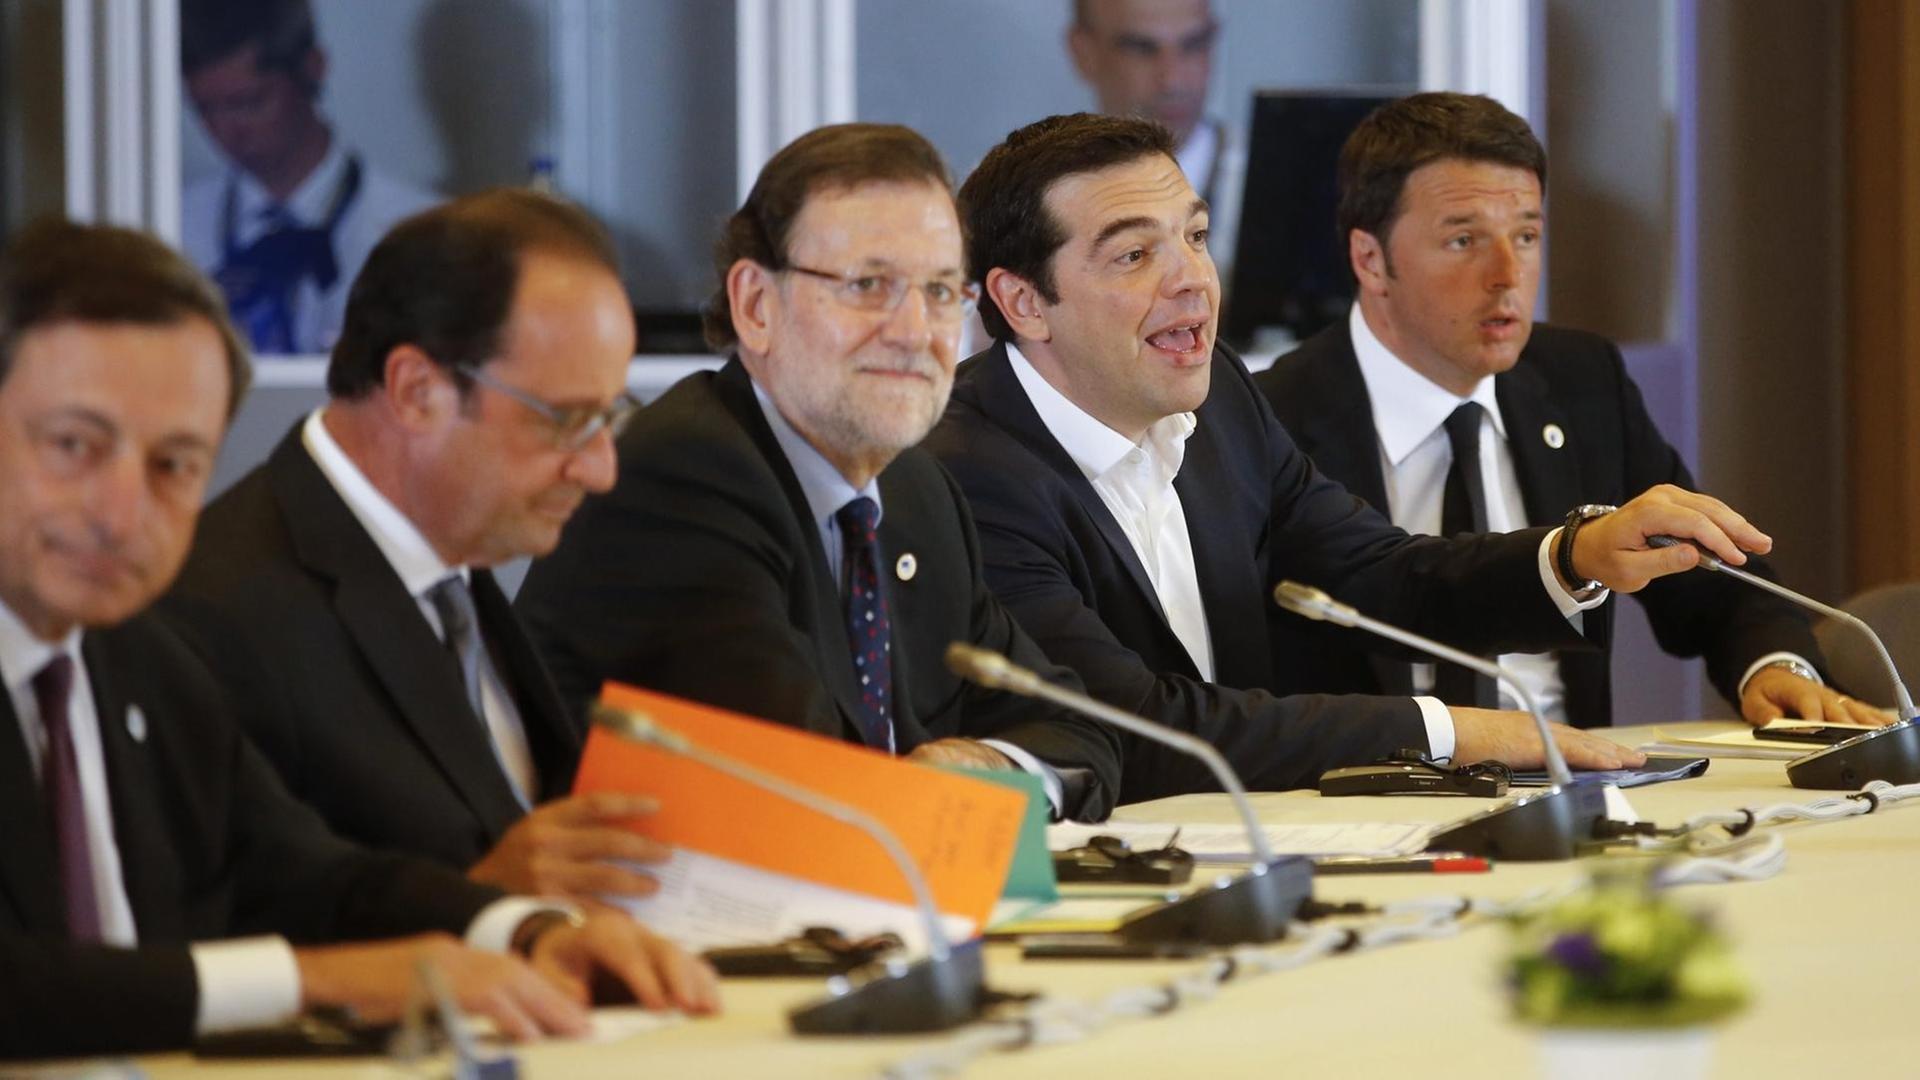 Draghi, Hollande, Rajoy, Tsipras und Renzi sitzen nebeneinander an einem Konferenztisch an Mikrofonen.